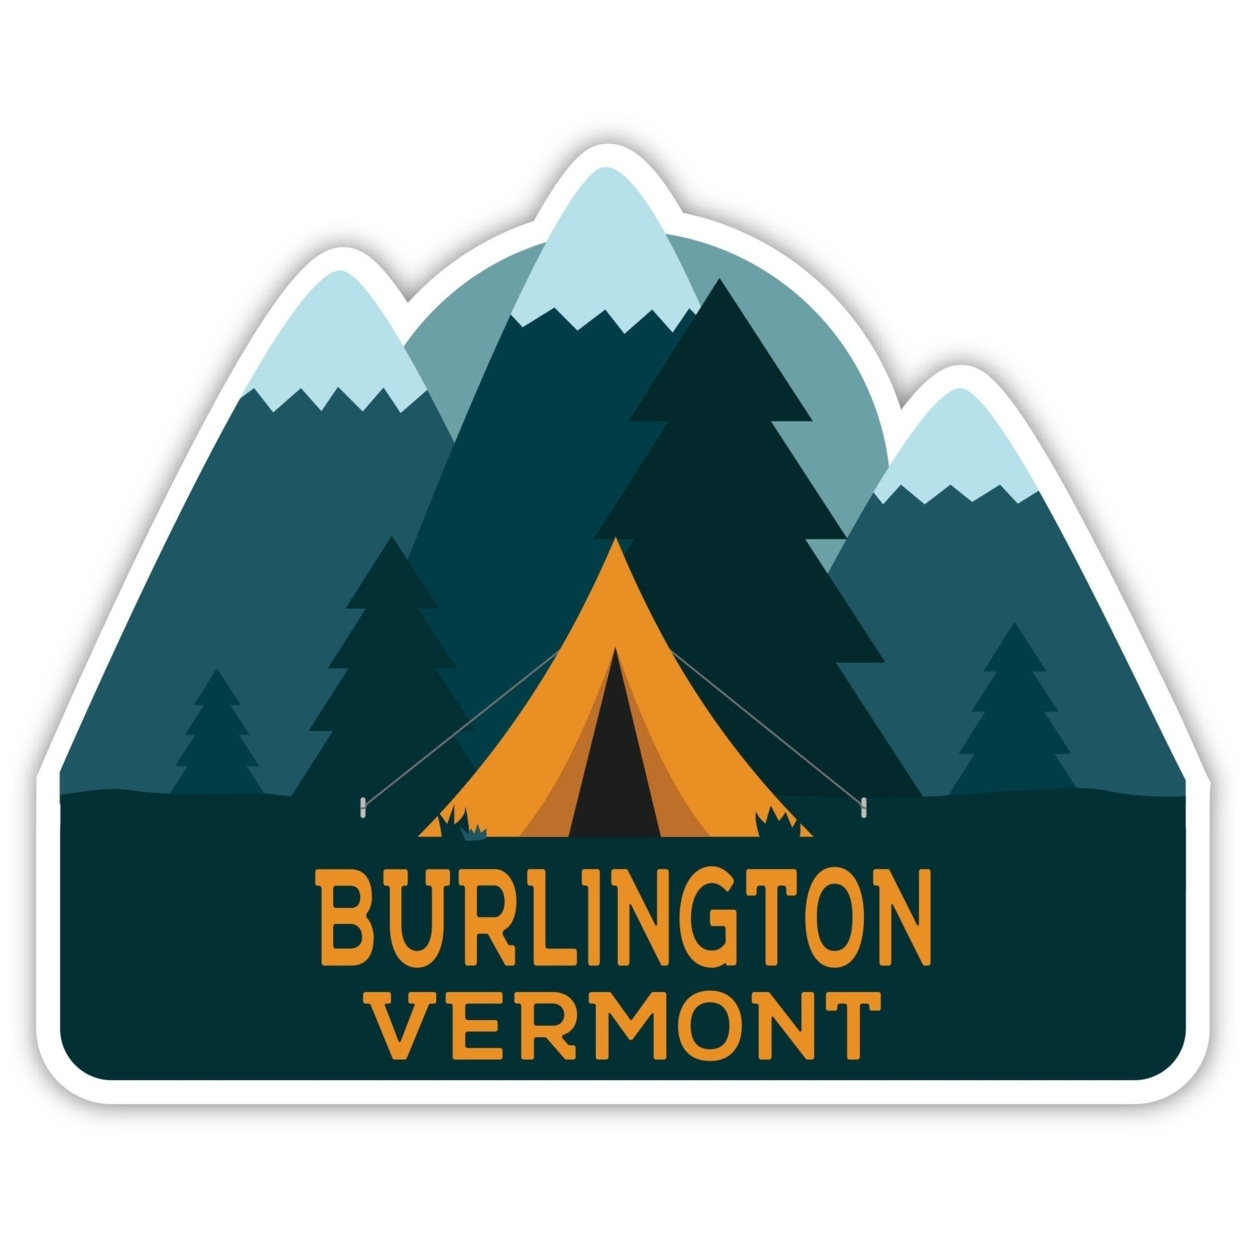 Burlington Vermont Souvenir Decorative Stickers (Choose Theme And Size) - Single Unit, 8-Inch, Tent